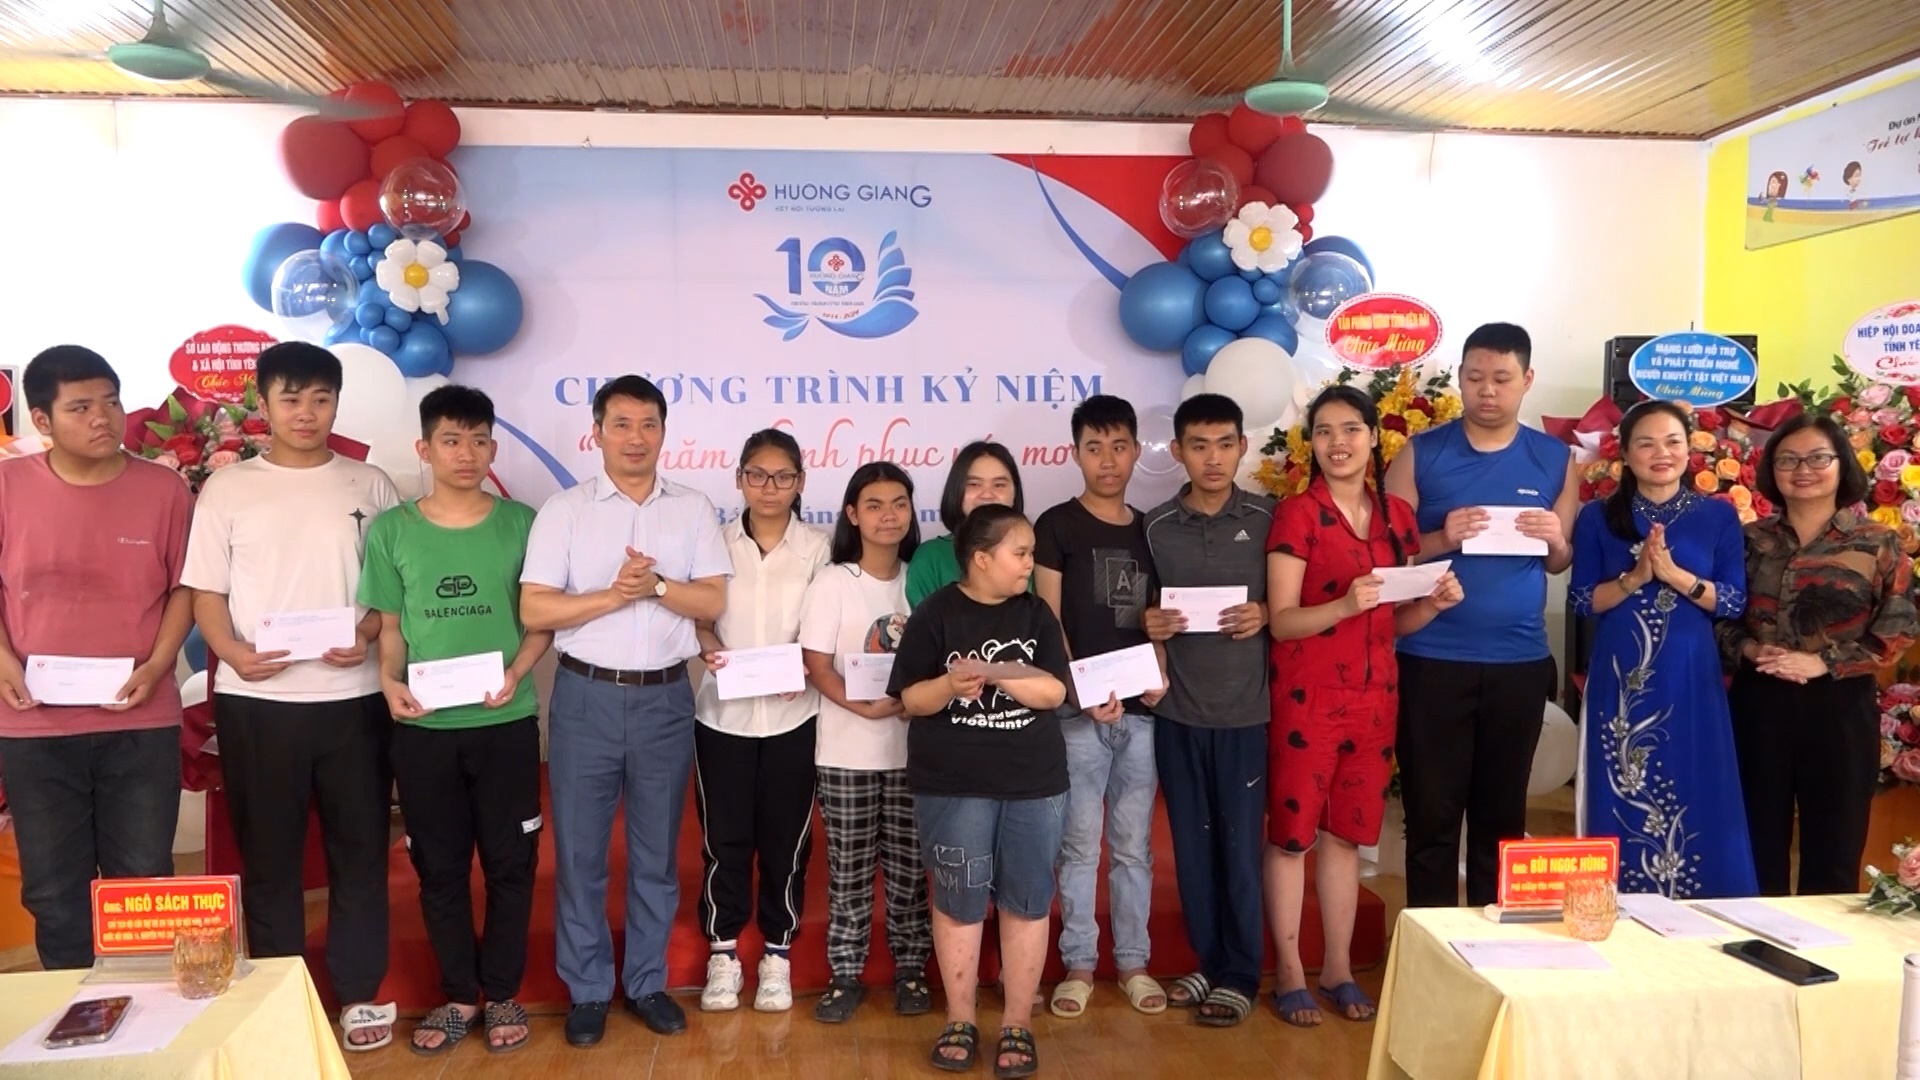 Trung tâm Hương Giang - 10 năm chinh phục ước mơ